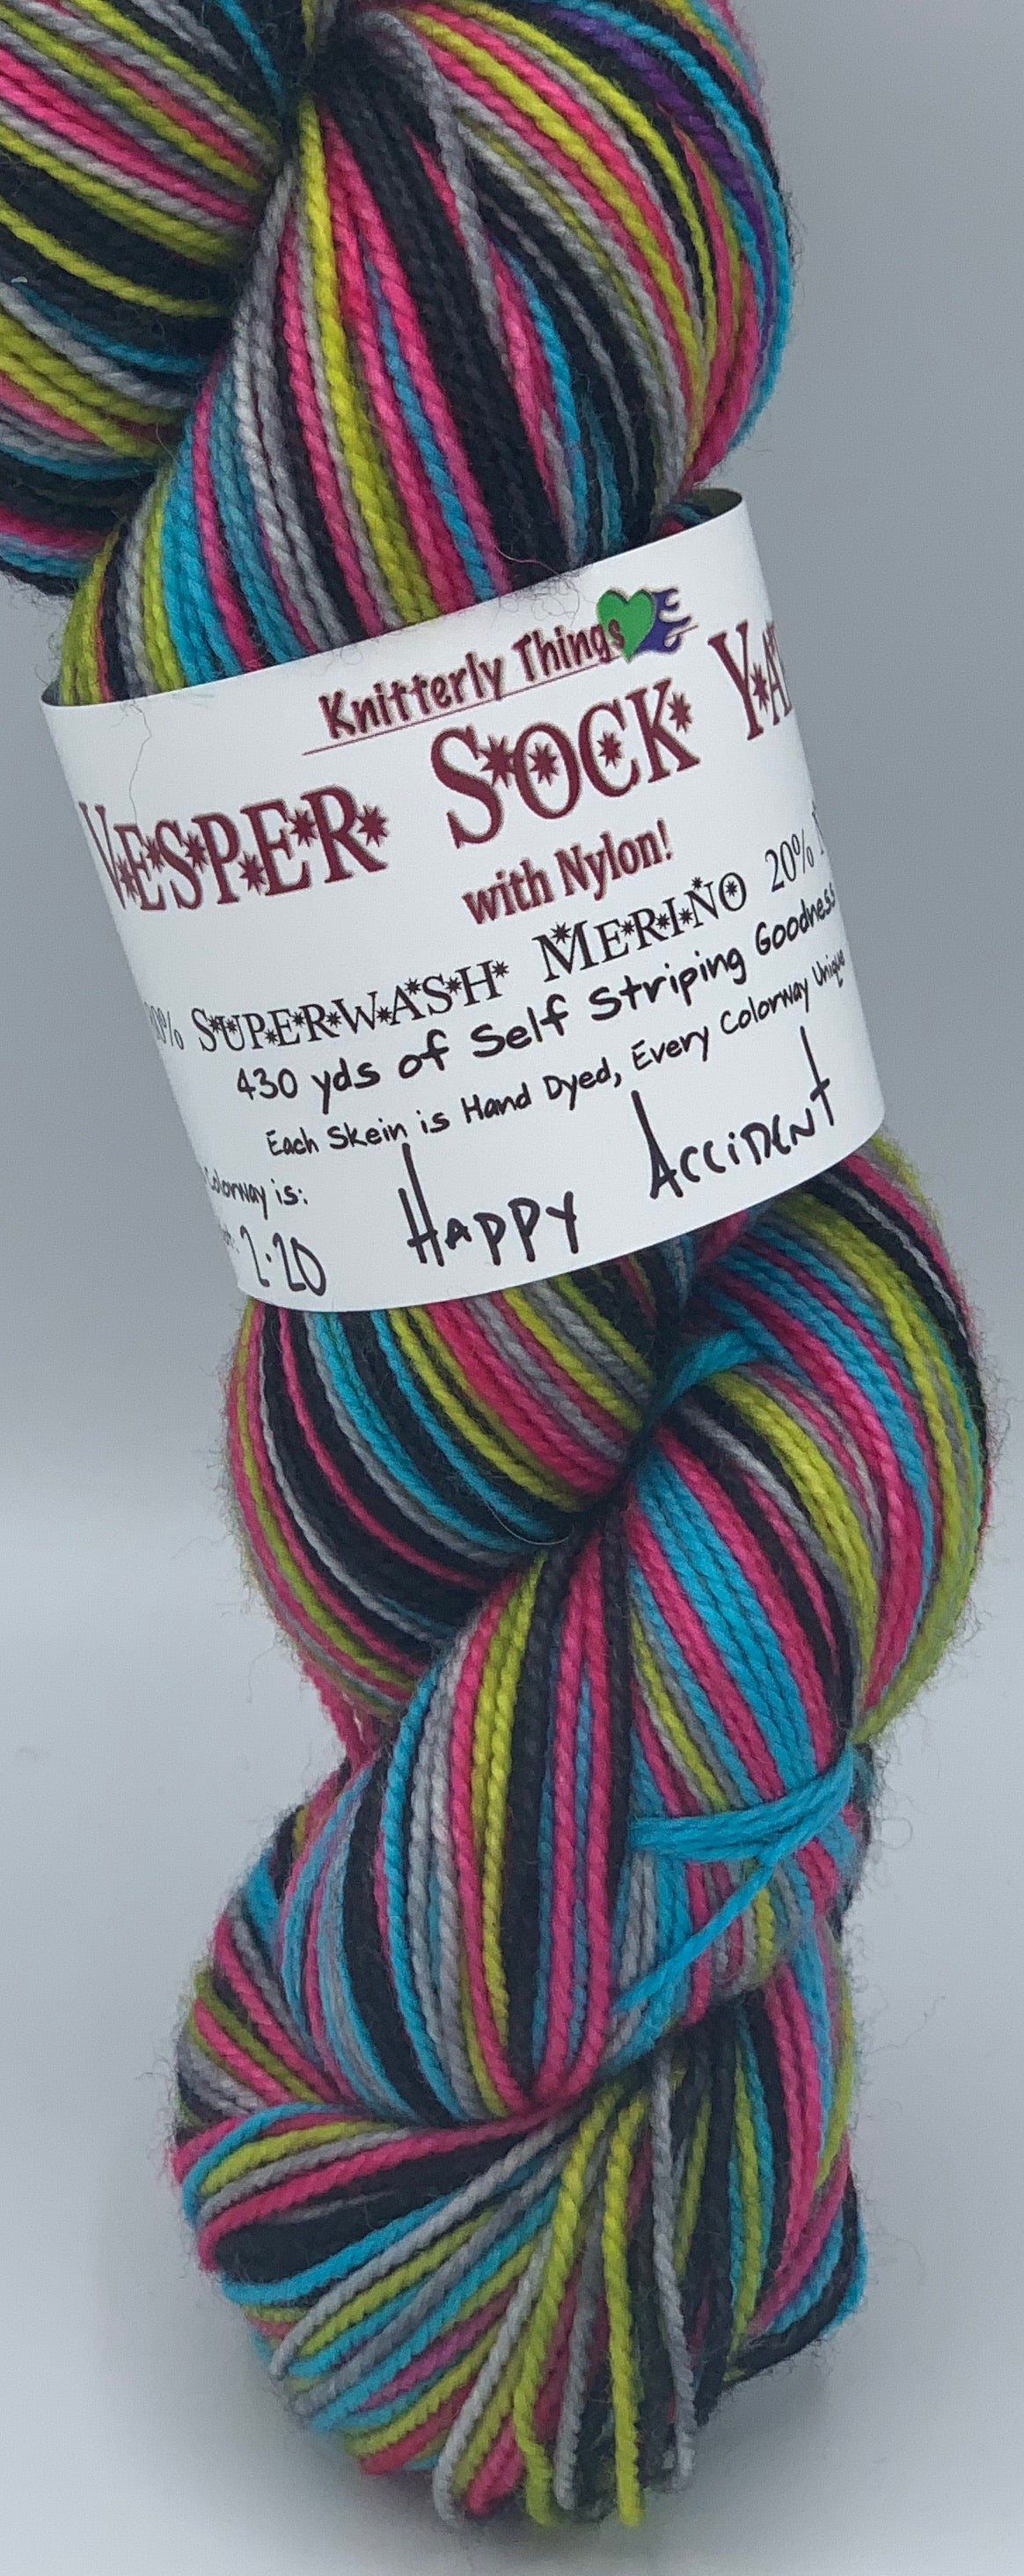 Vesper Sock Yarn